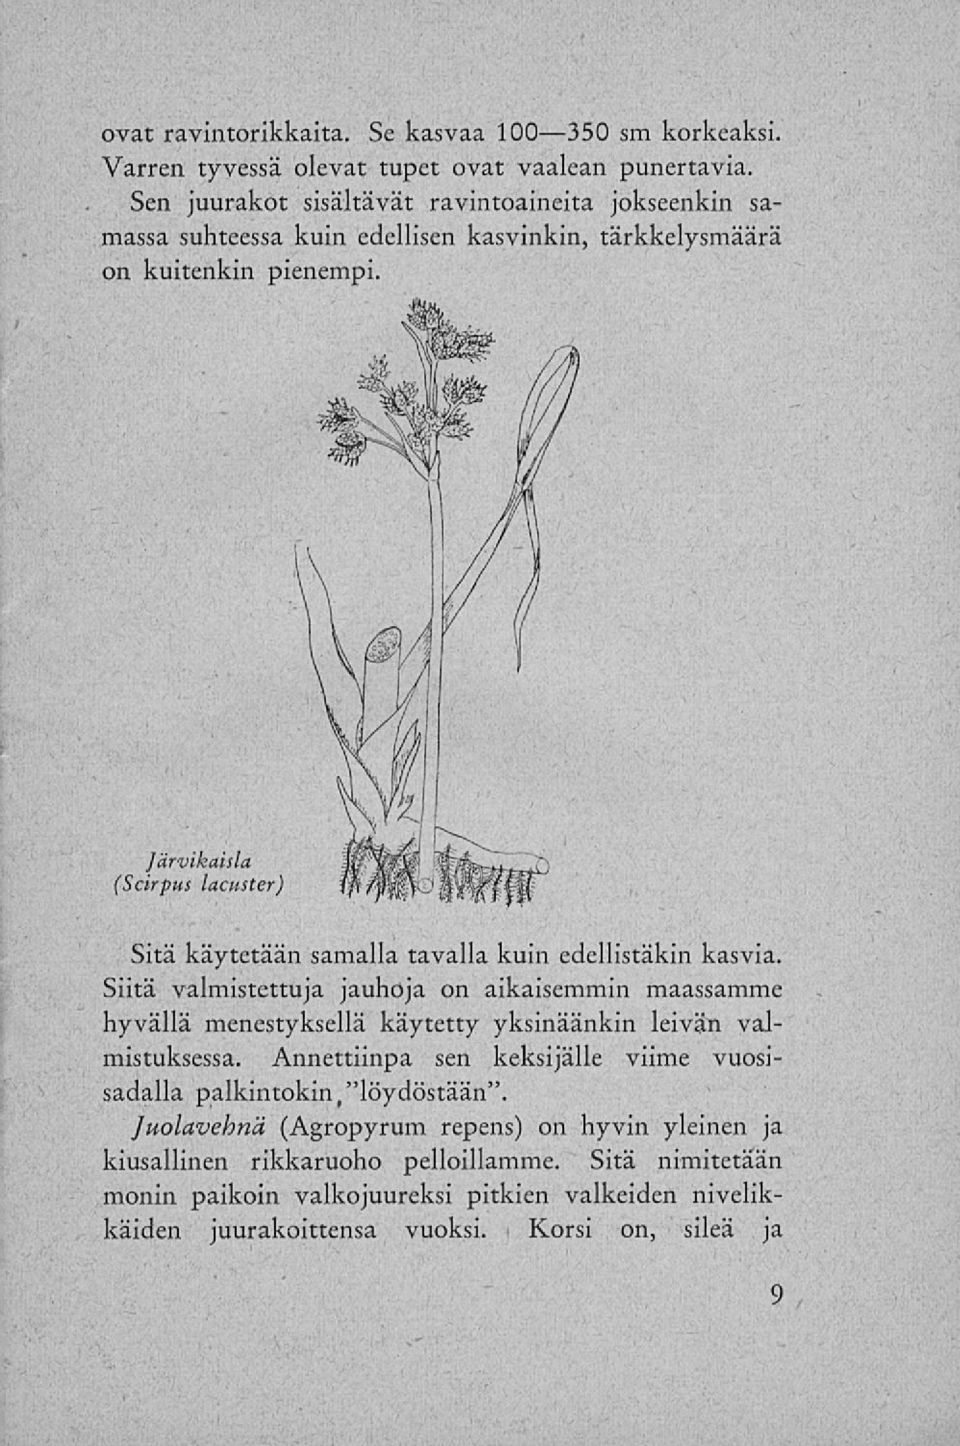 ]ärvikaisla (Scirpus lacuster) Sitä käytetään samalla tavalla kuin edellistäkin kasvia.